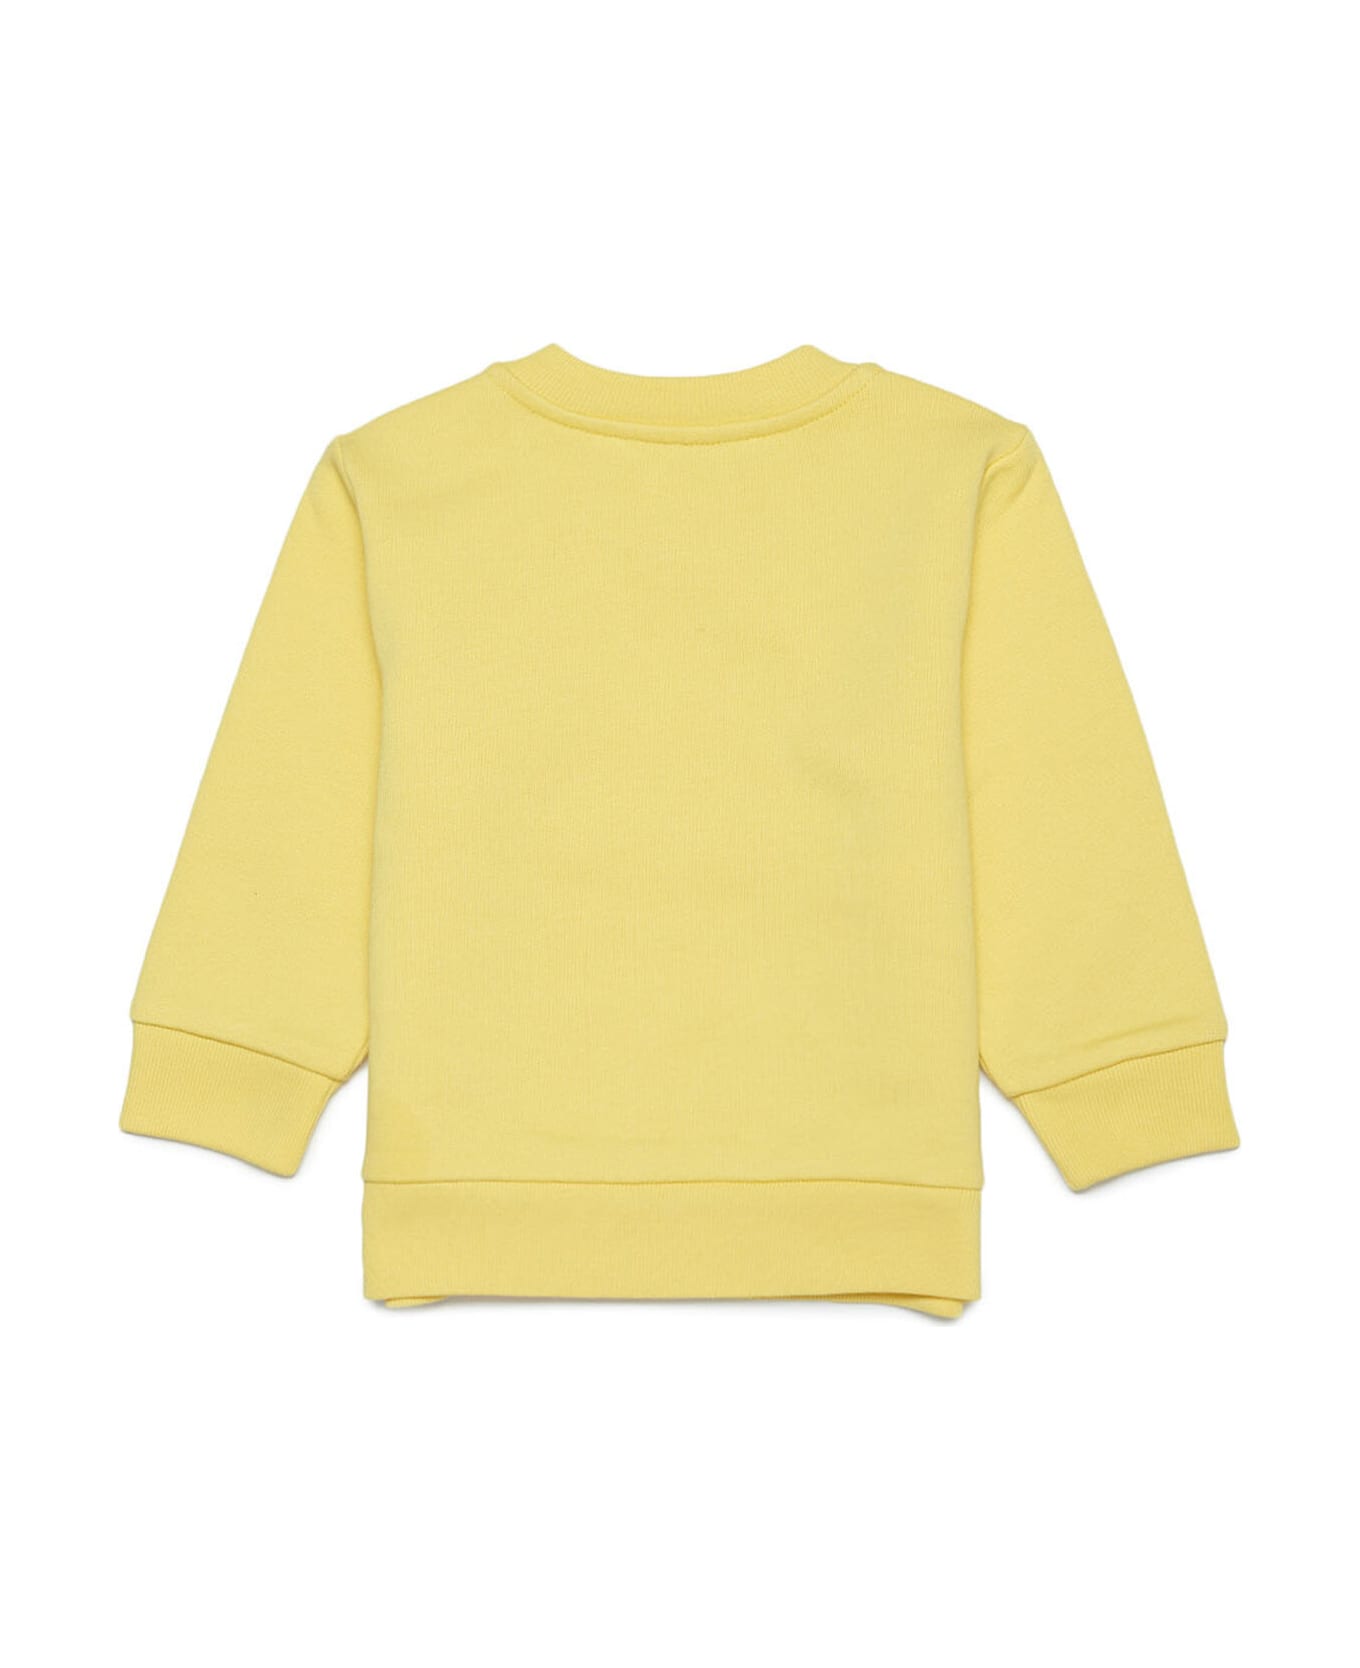 Marni Ms33b Sweat-shirt Marni Yellow Cotton Sweatshirt With Marni Displaced Logo - Lemon zest yellow